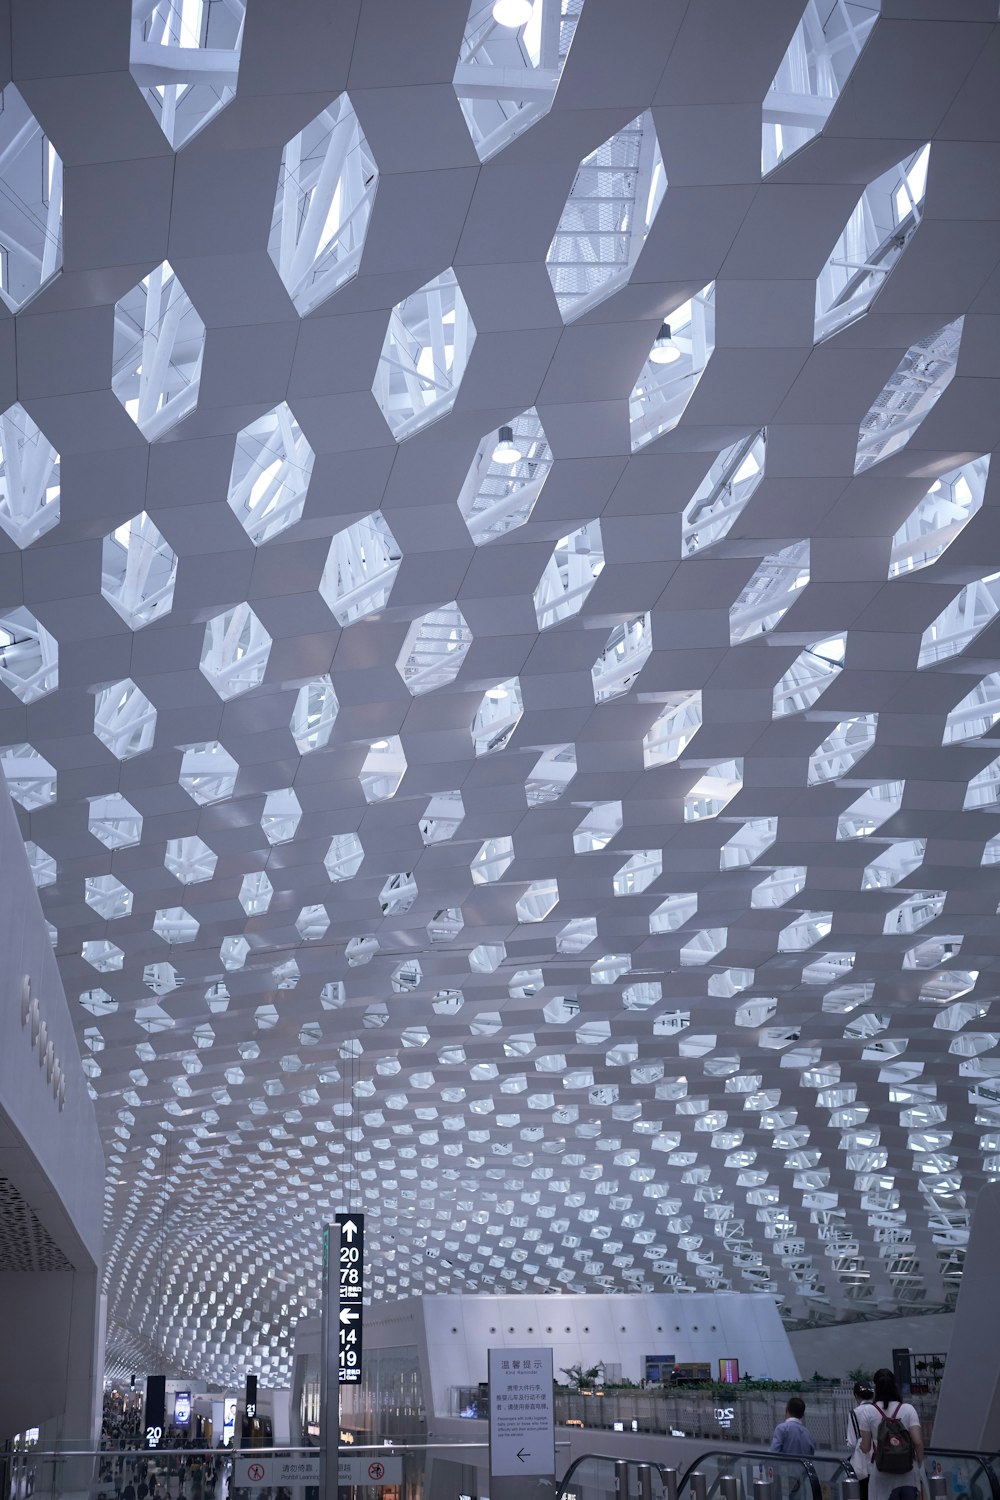 공항의 천장은 유리 블록으로 만들어져 있습니다